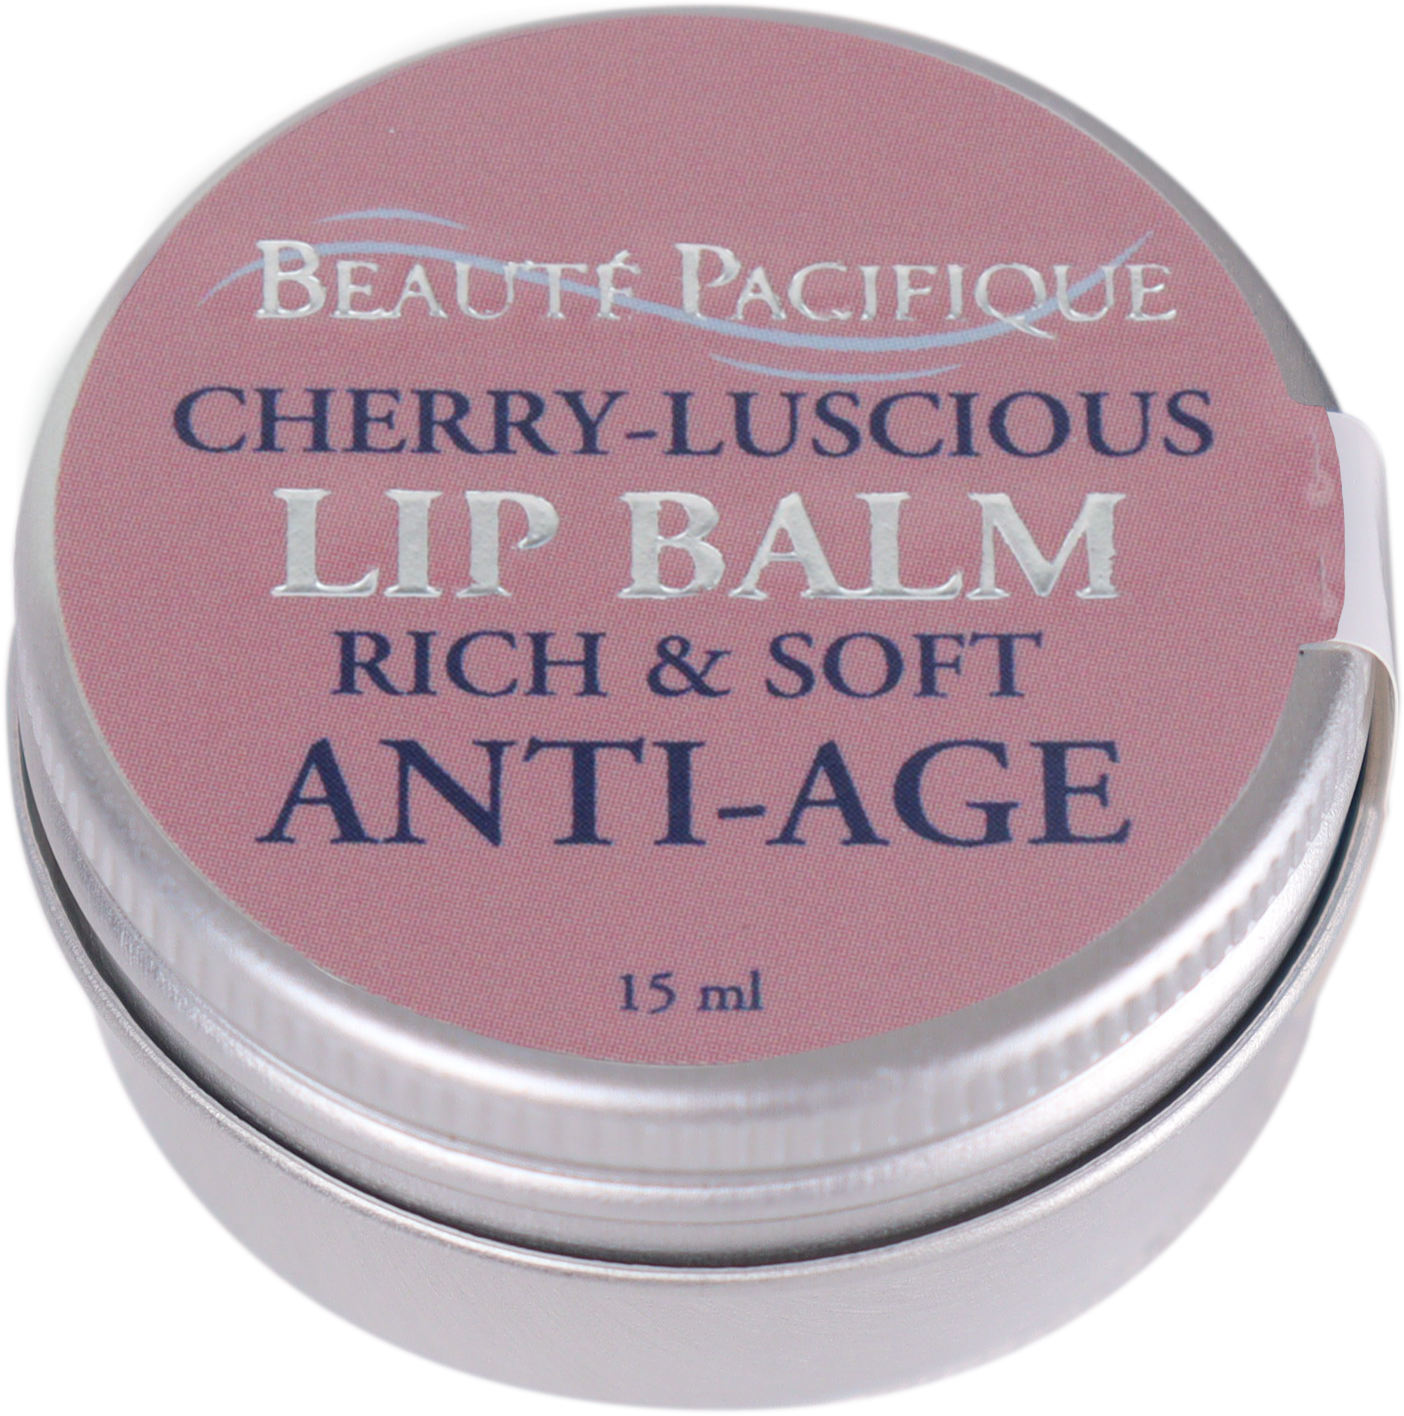 Cherry-Luscious Lip Balm Rich & Soft Anti-Age